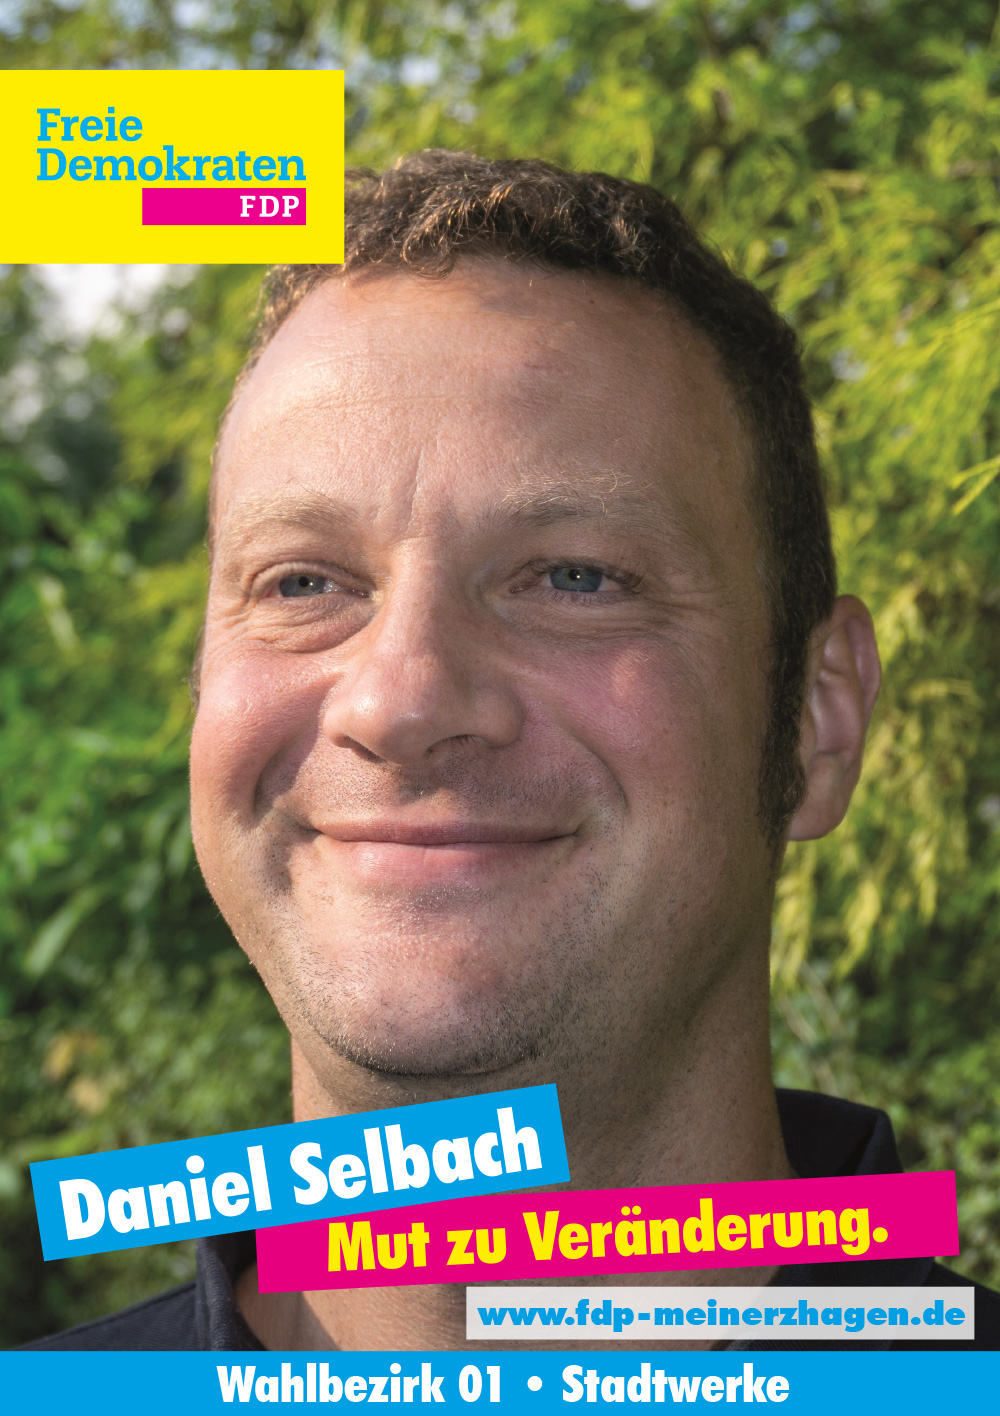 Daniel Selbach - Unser Kandidat für Wahlbezirk 1